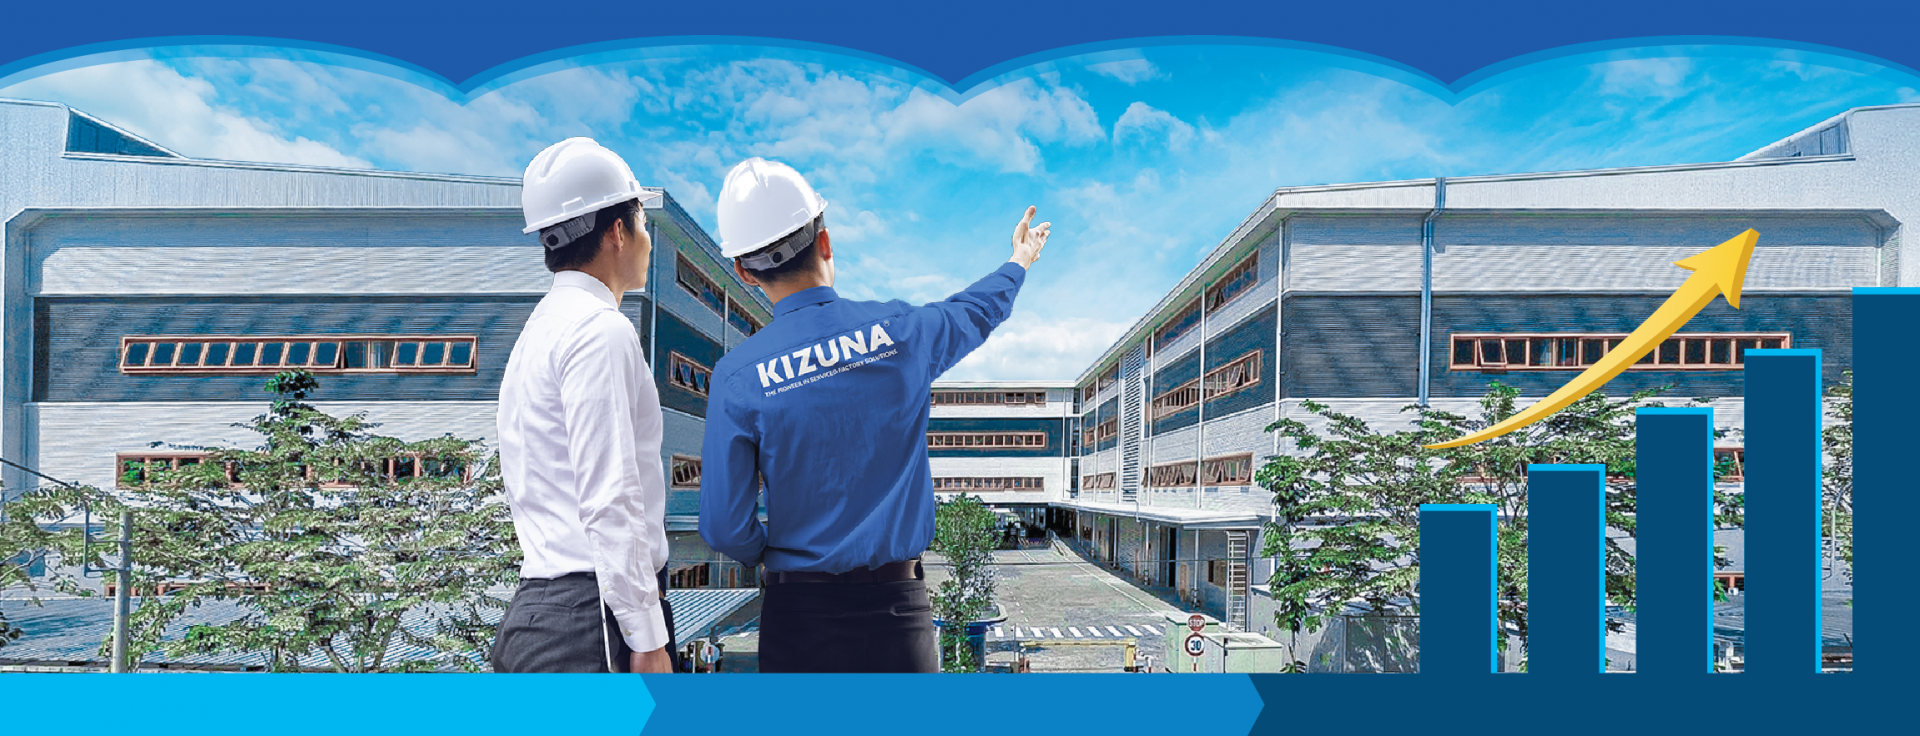 KIZUNA - 効率かつ安心の製造環境